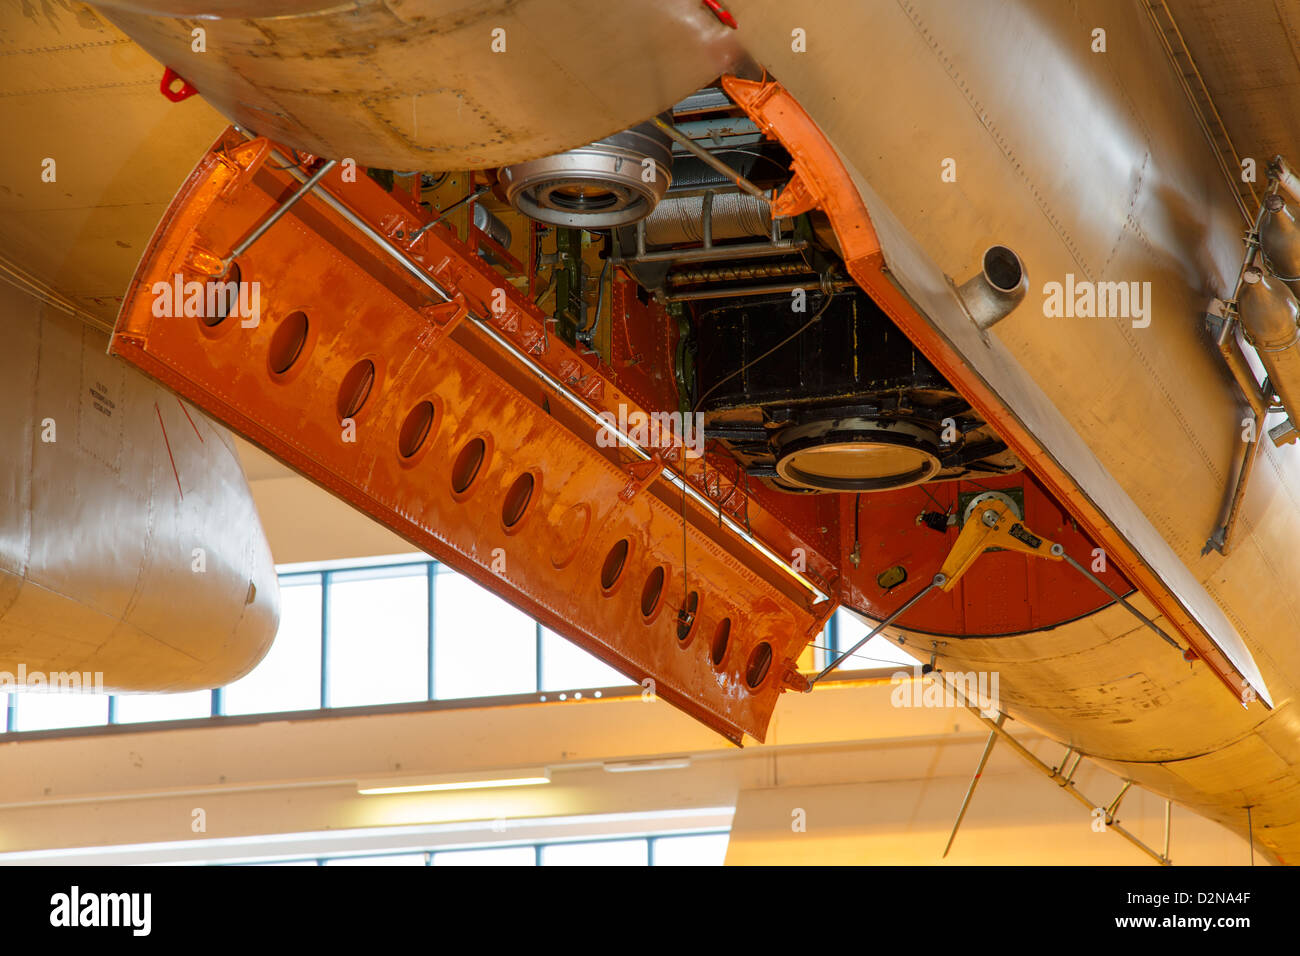 Telecamere aerofotografiche e aria bersaglio verricello di traino montato all'interno della baia di bomba di un finlandese Air Force Ilyushin Il-28 velivoli. Foto Stock